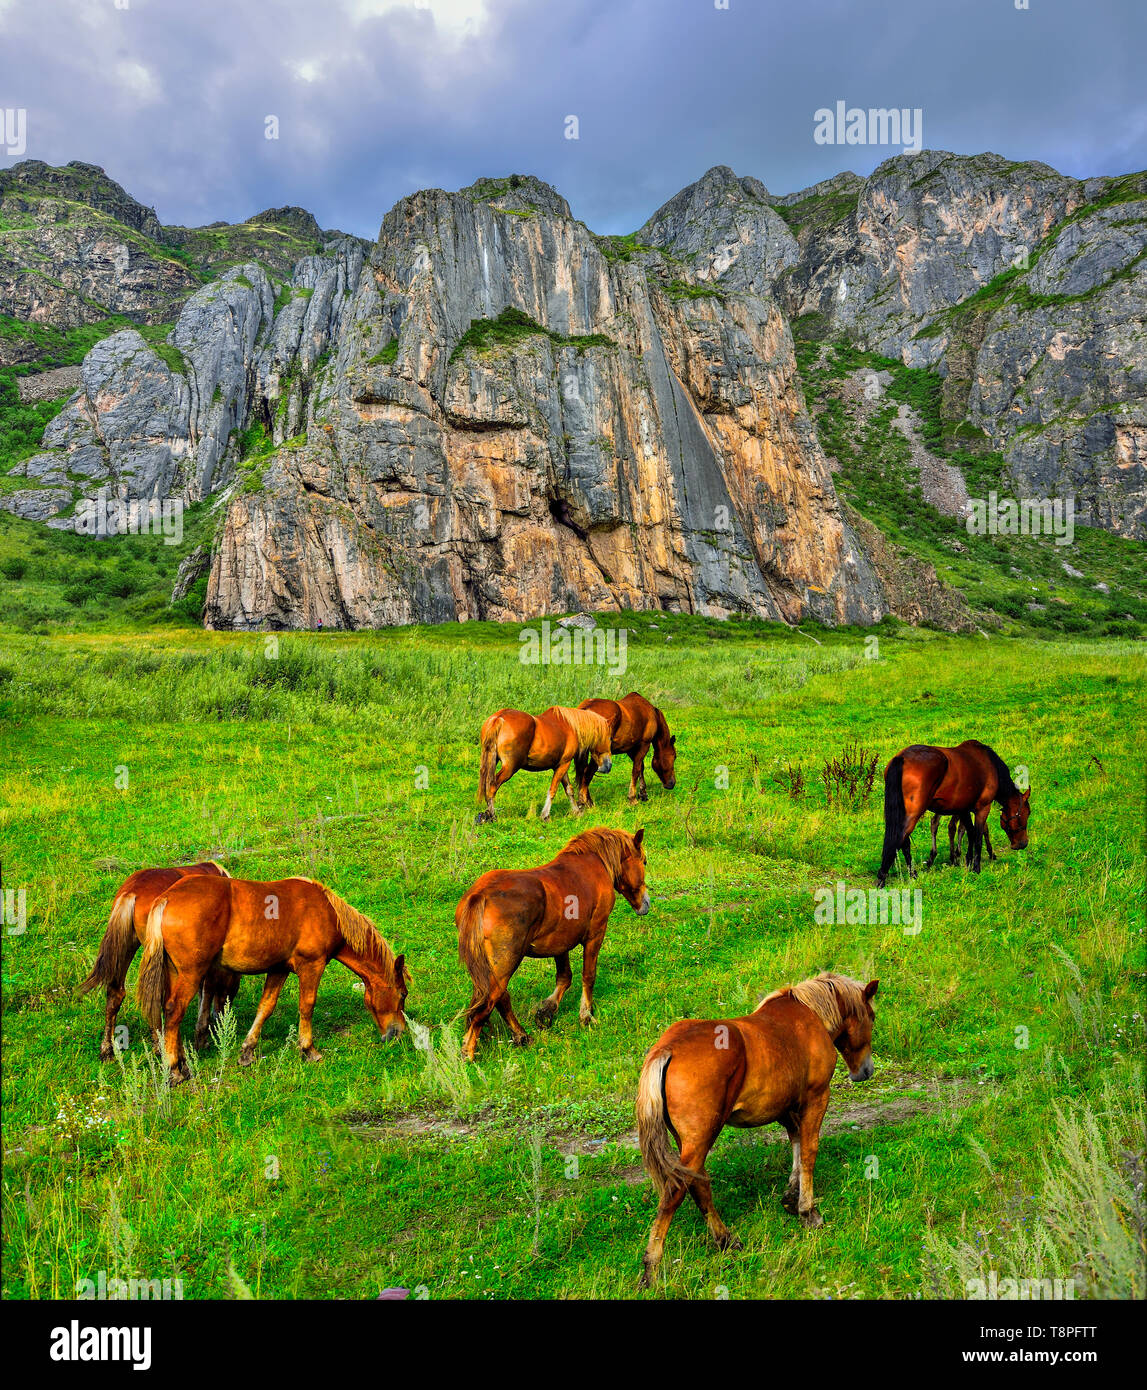 Herde von Braun Pferde grasen in Mountain Valley in der Nähe von steilen Klippen von alten, verwitterten Kalkstein in Altai Gebirge, Russland - Sommer bewölkt Landschaft. Werden Stockfoto